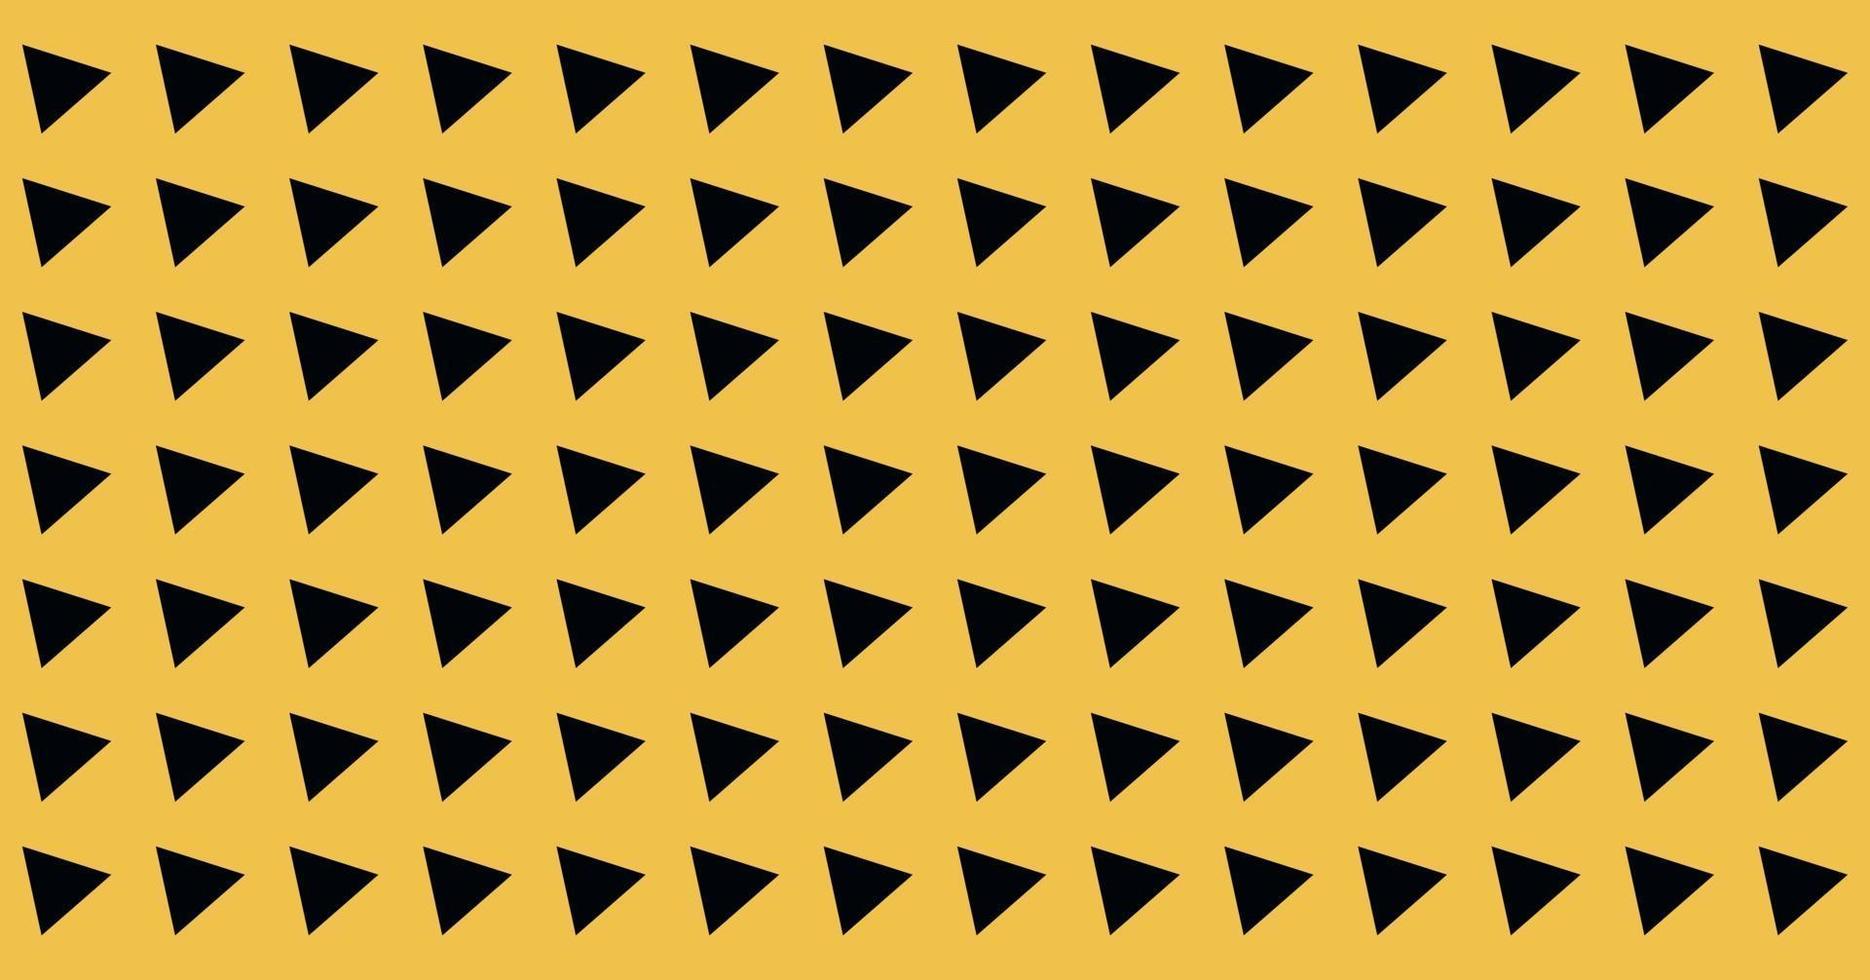 paysage abstrait large fond triangle incliné symbole jaune et noir modèle sans couture pour les couvertures d'impression textile vecteur